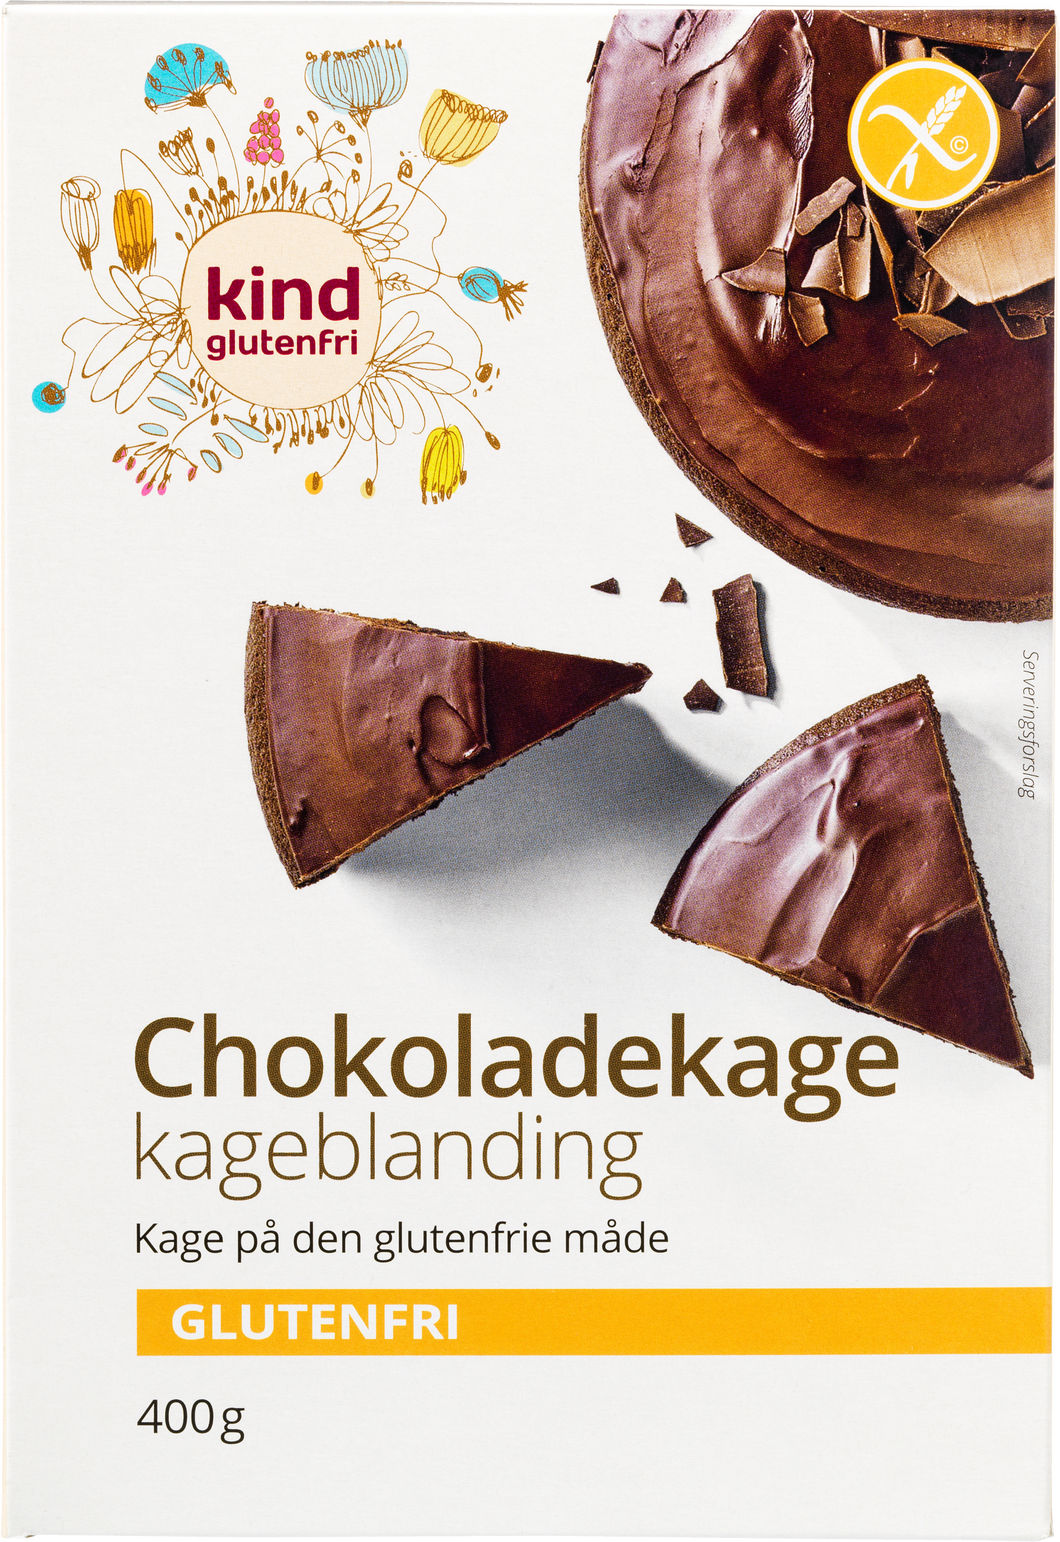 Kind Chocolate Cake